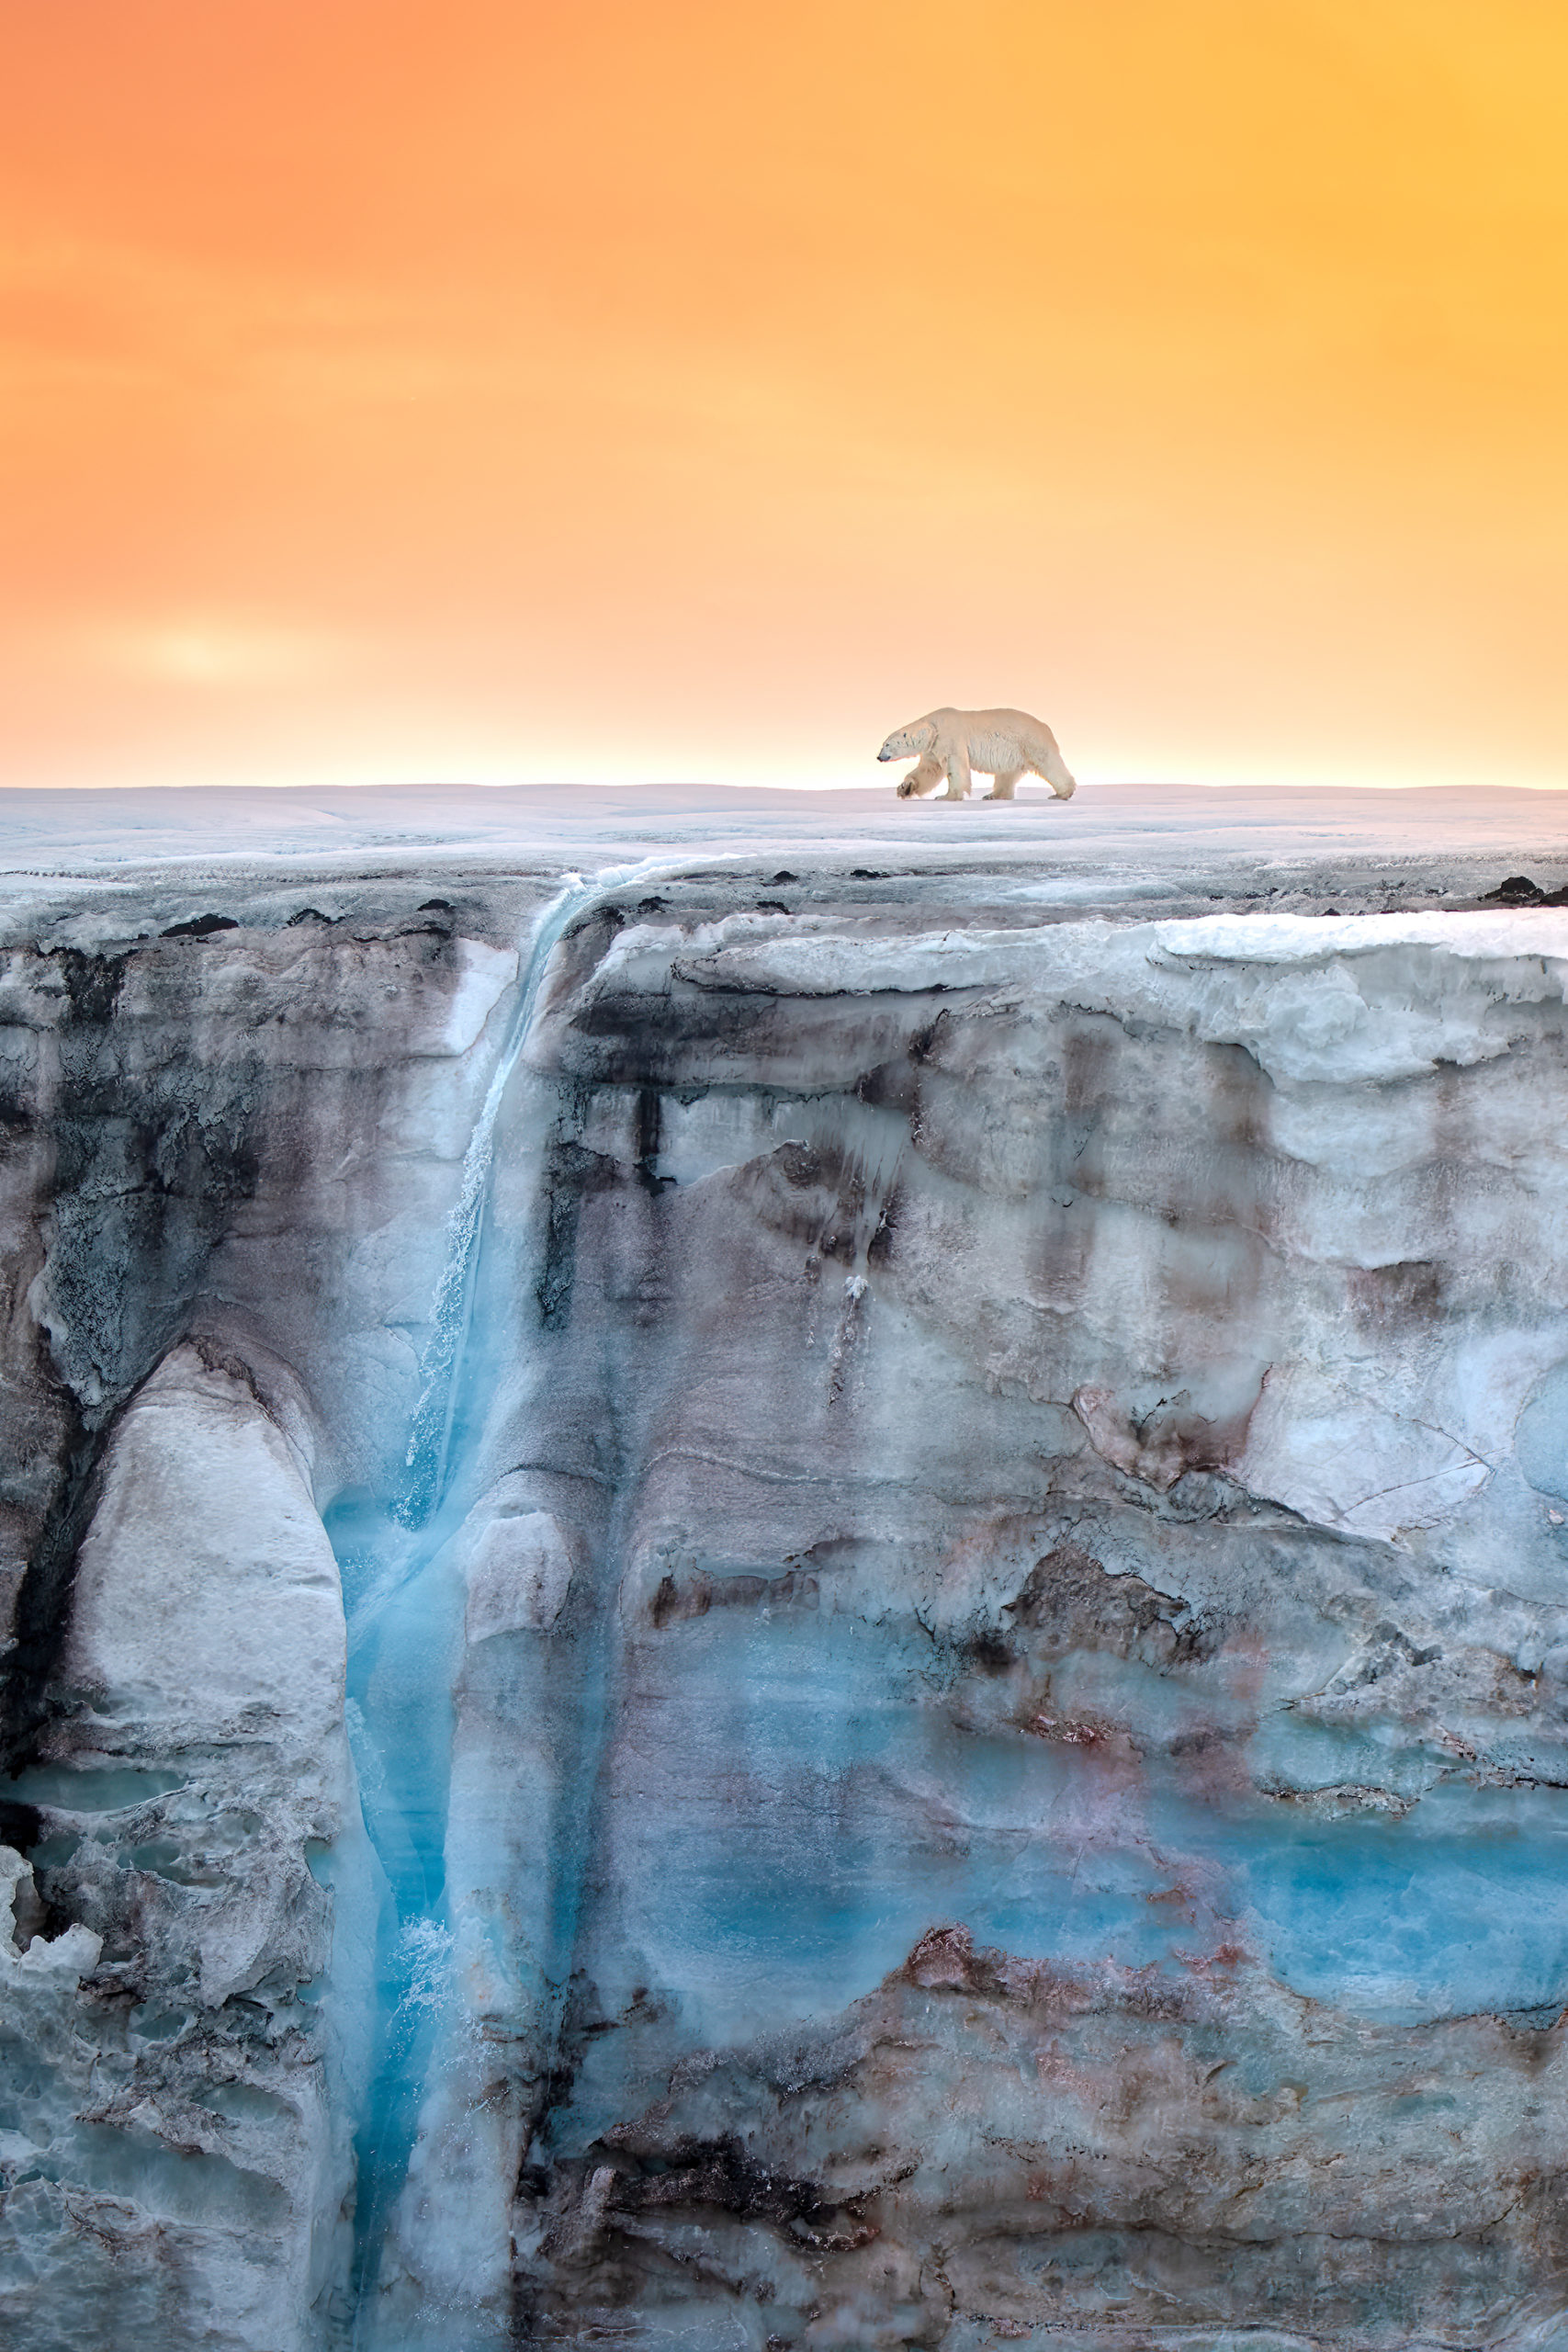 Urso caminhando na galeria é uma das imagens finalistas de prêmio de fotografia do mar 